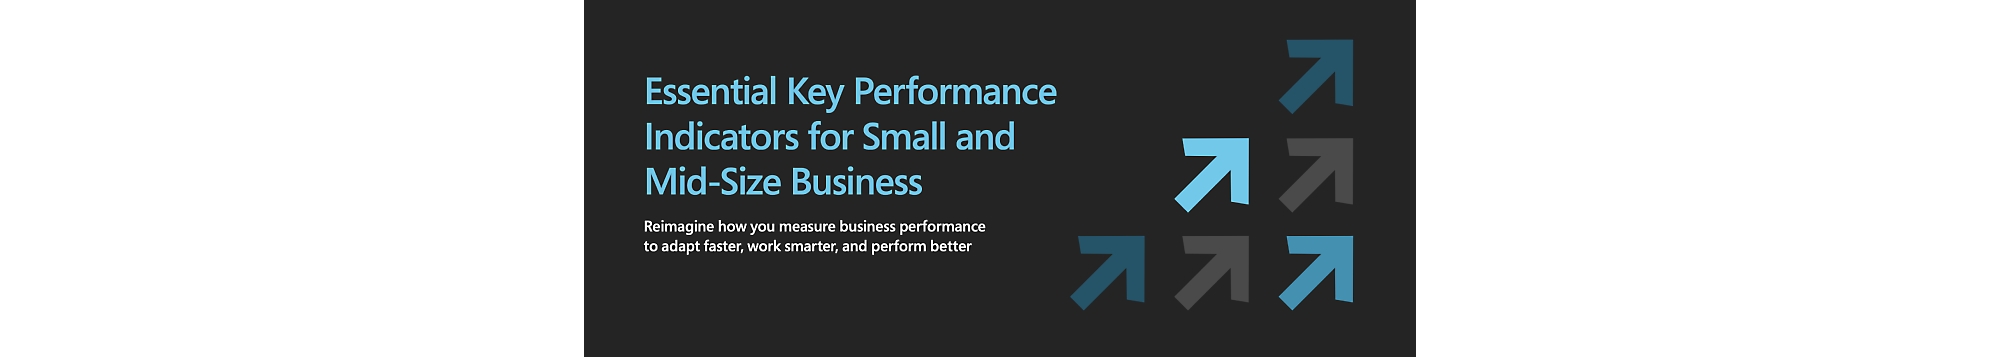 Indicadores chave de desempenho essenciais para pequenas e médias empresas.